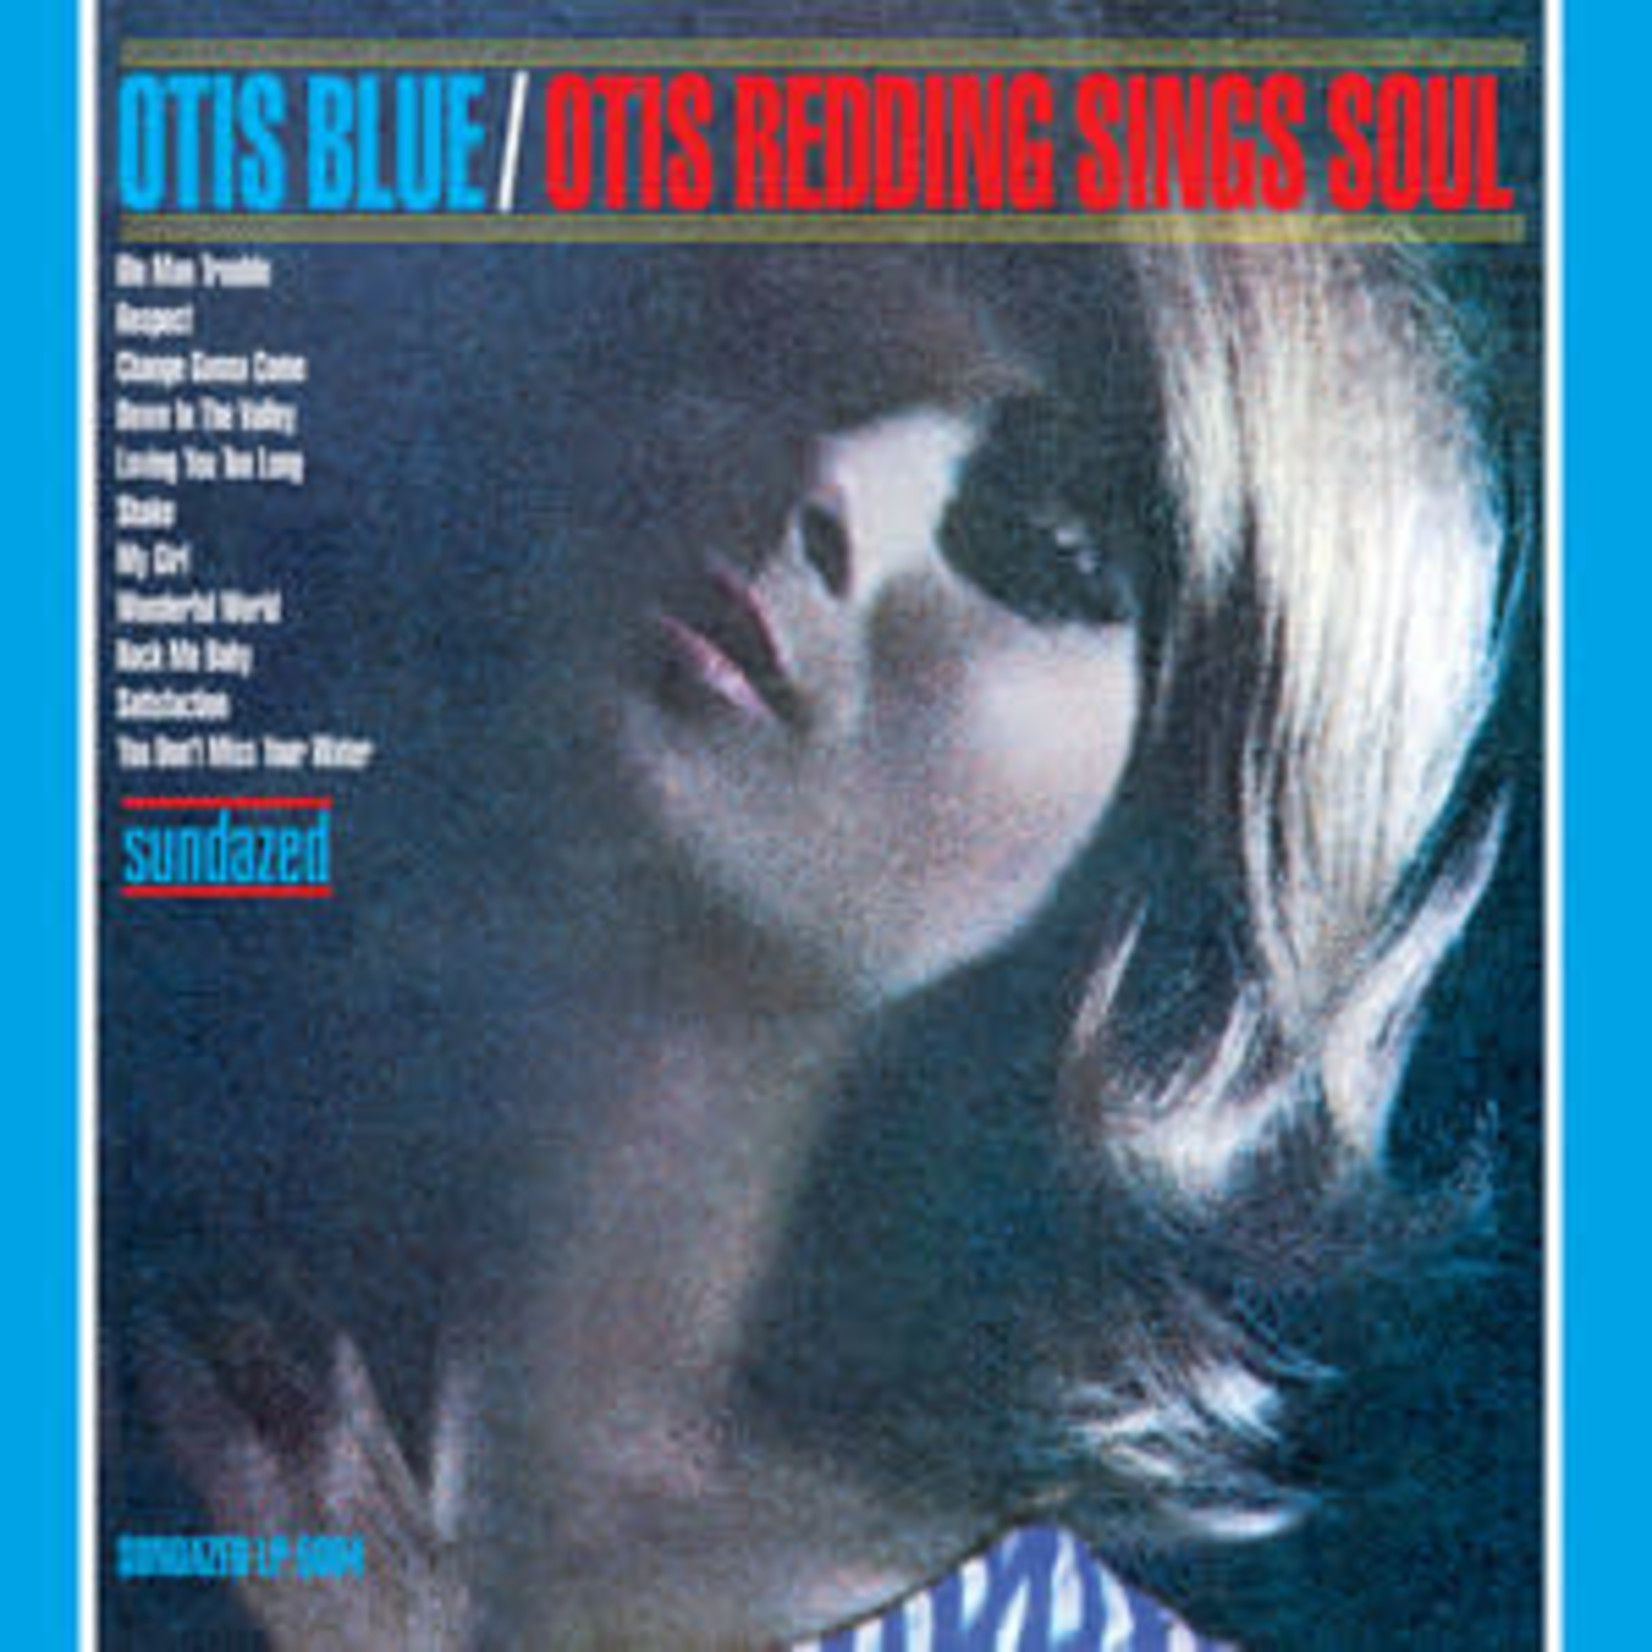 [New] Otis Redding - Otis Blue/Otis Redding Sings Soul